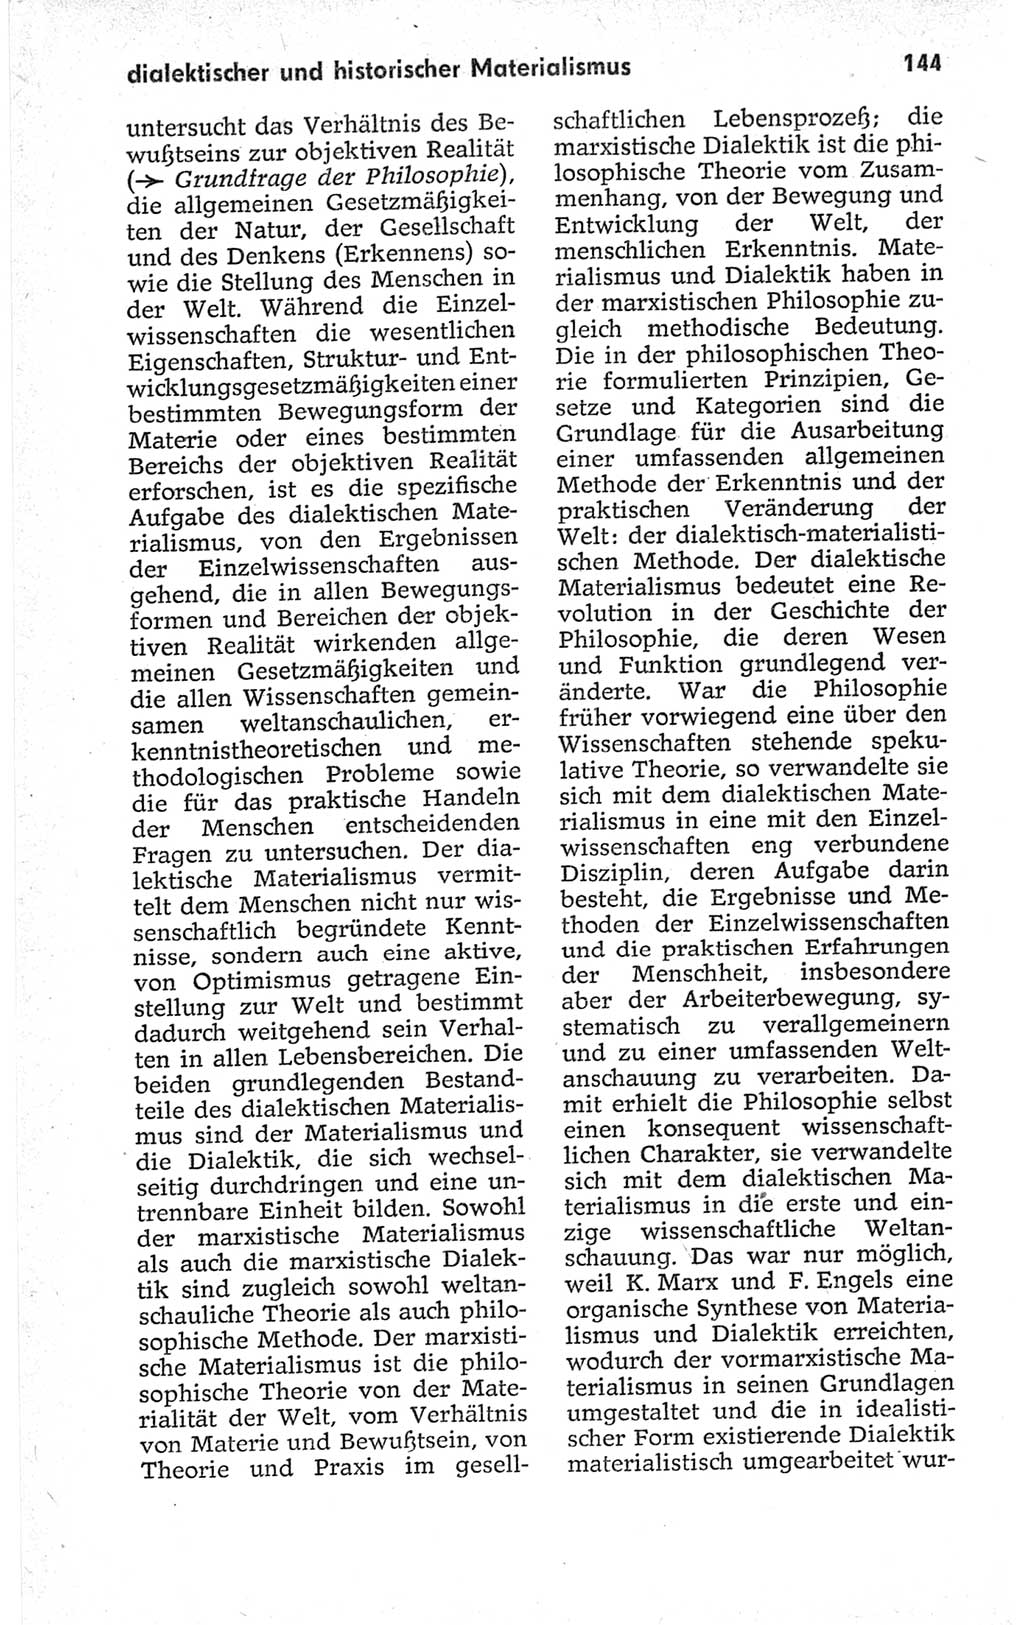 Kleines politisches Wörterbuch [Deutsche Demokratische Republik (DDR)] 1967, Seite 144 (Kl. pol. Wb. DDR 1967, S. 144)